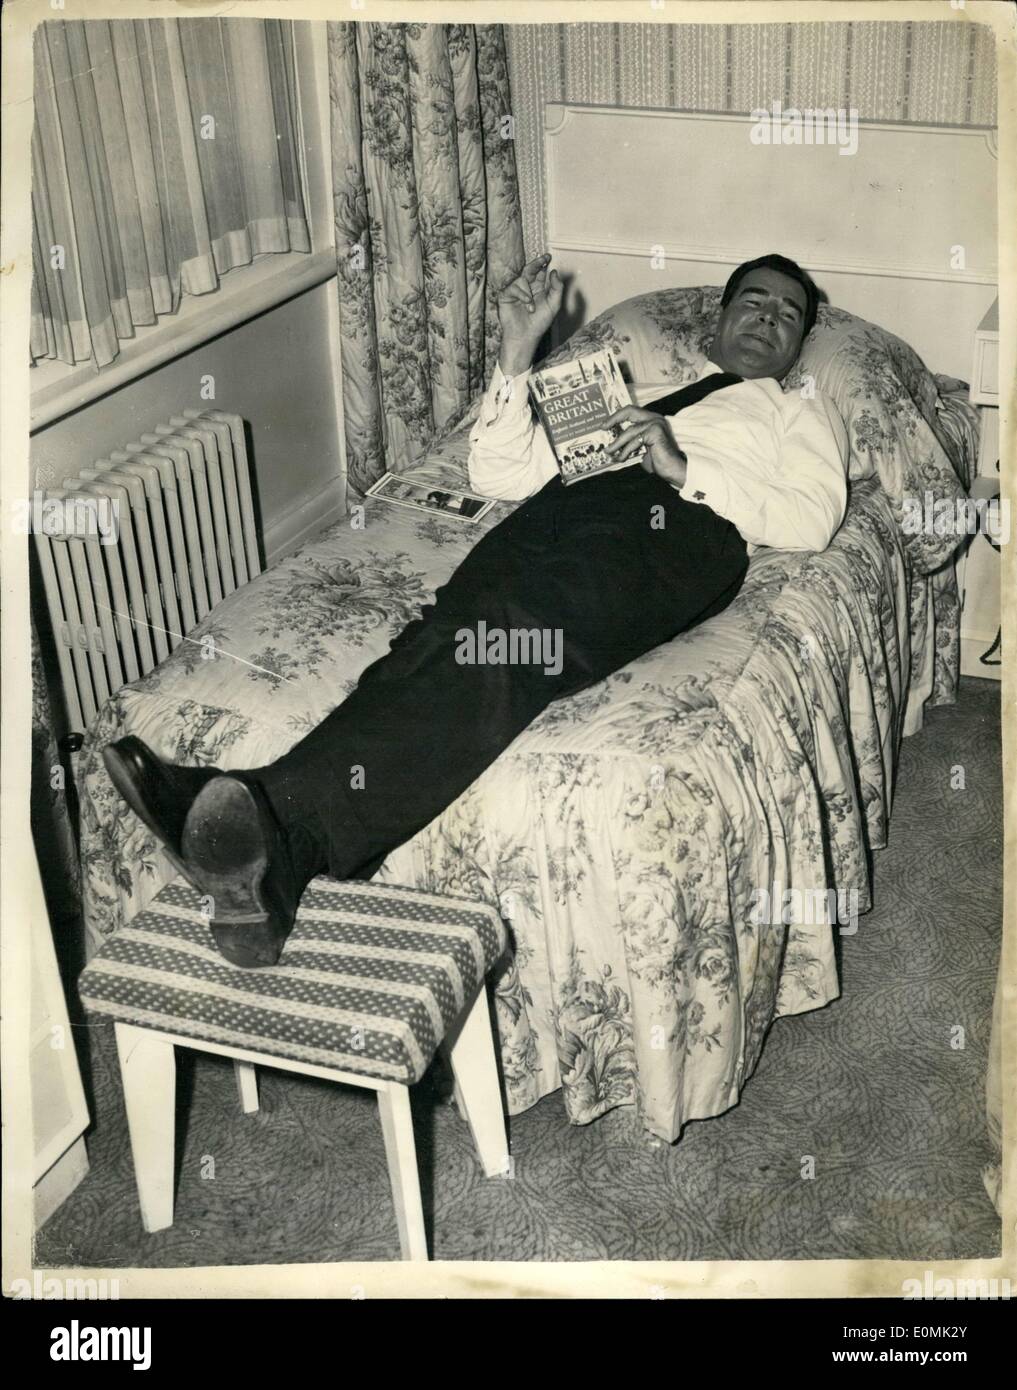 Sept. 09, 1955 - Hollywood-Filmstar - 6 ft 4 Zoll Rod Cameron, heute in London angekommen. Hier ist hier, Mike O'kelly, der kämpfenden Detektiv hier '' Pass zum Verrat '' - die zu fertigenden für Eros-release zu spielen. Es wird seinen ersten britischen Film sein. Foto zeigt Rod Cameron musste einen Schemel für seine Füße - zu verwenden, weil das Bett zu kurz - war wenn Sie heute in seinem Hotel in London zu entspannen. Stockfoto